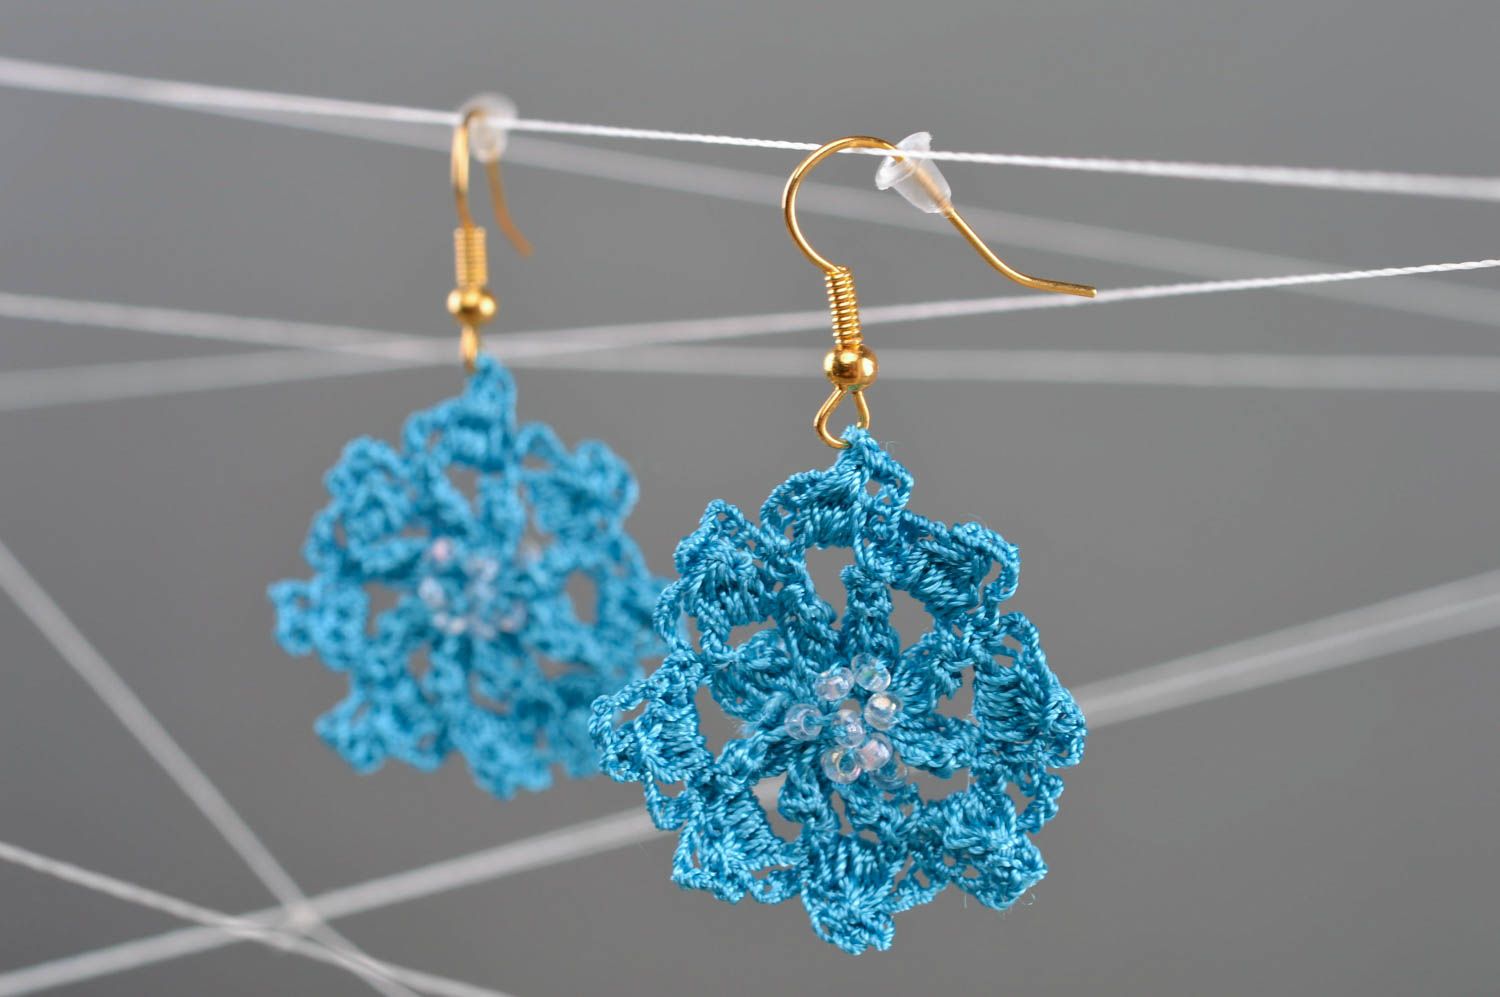 Текстильные серьги из хлопка и синтетики ручной работы голубые с бисером фото 1